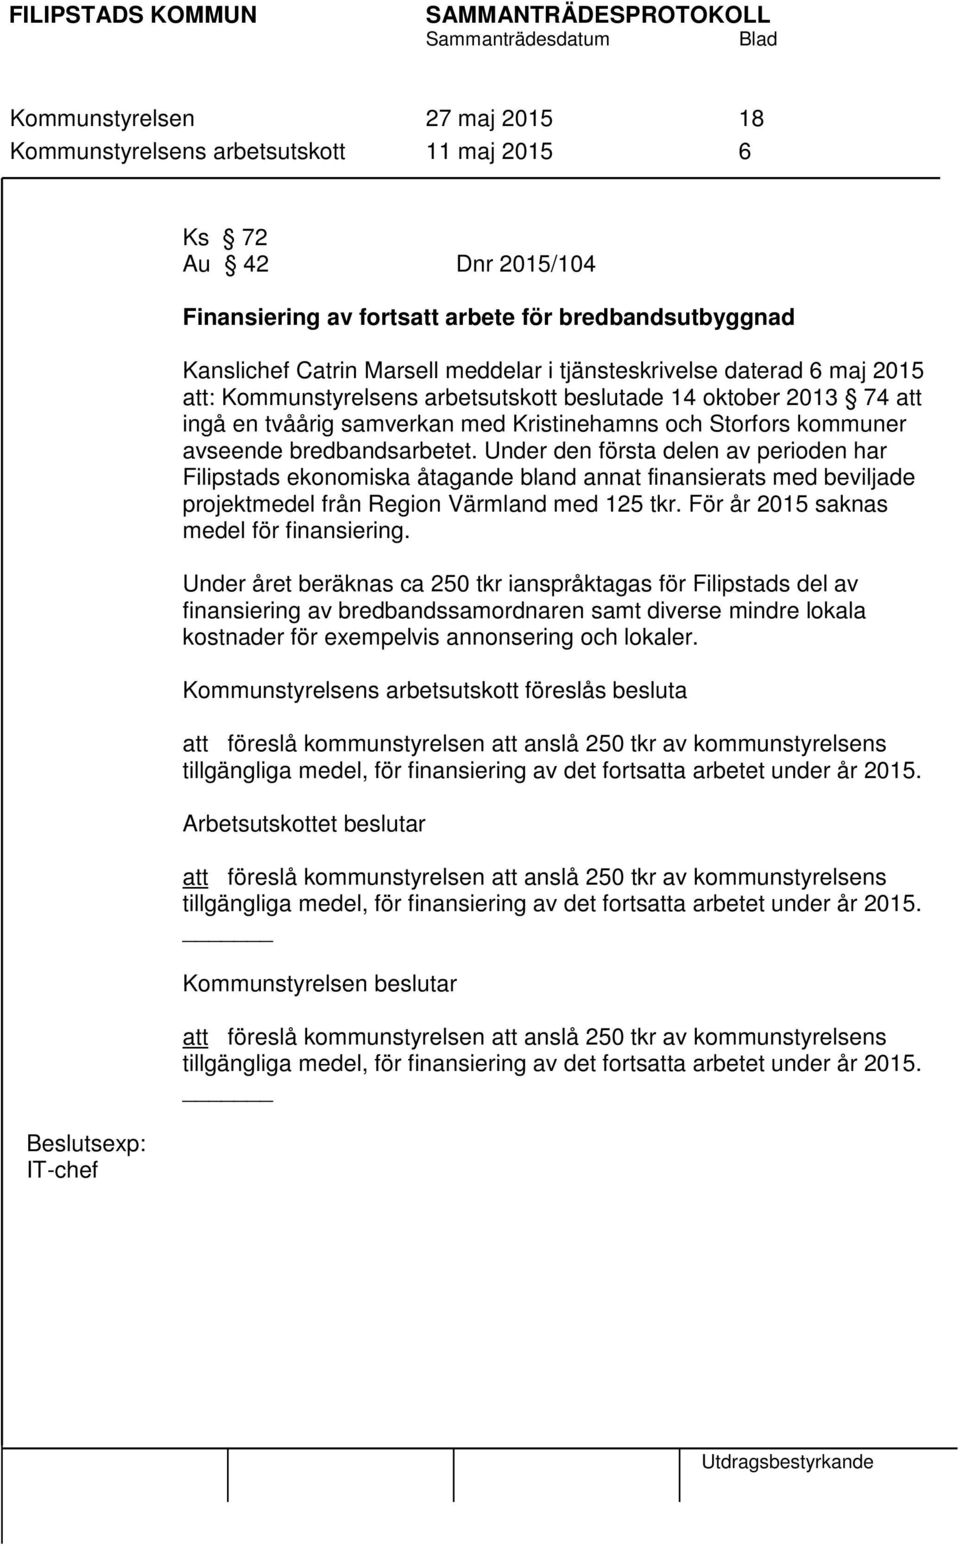 bredbandsarbetet. Under den första delen av perioden har Filipstads ekonomiska åtagande bland annat finansierats med beviljade projektmedel från Region Värmland med 125 tkr.